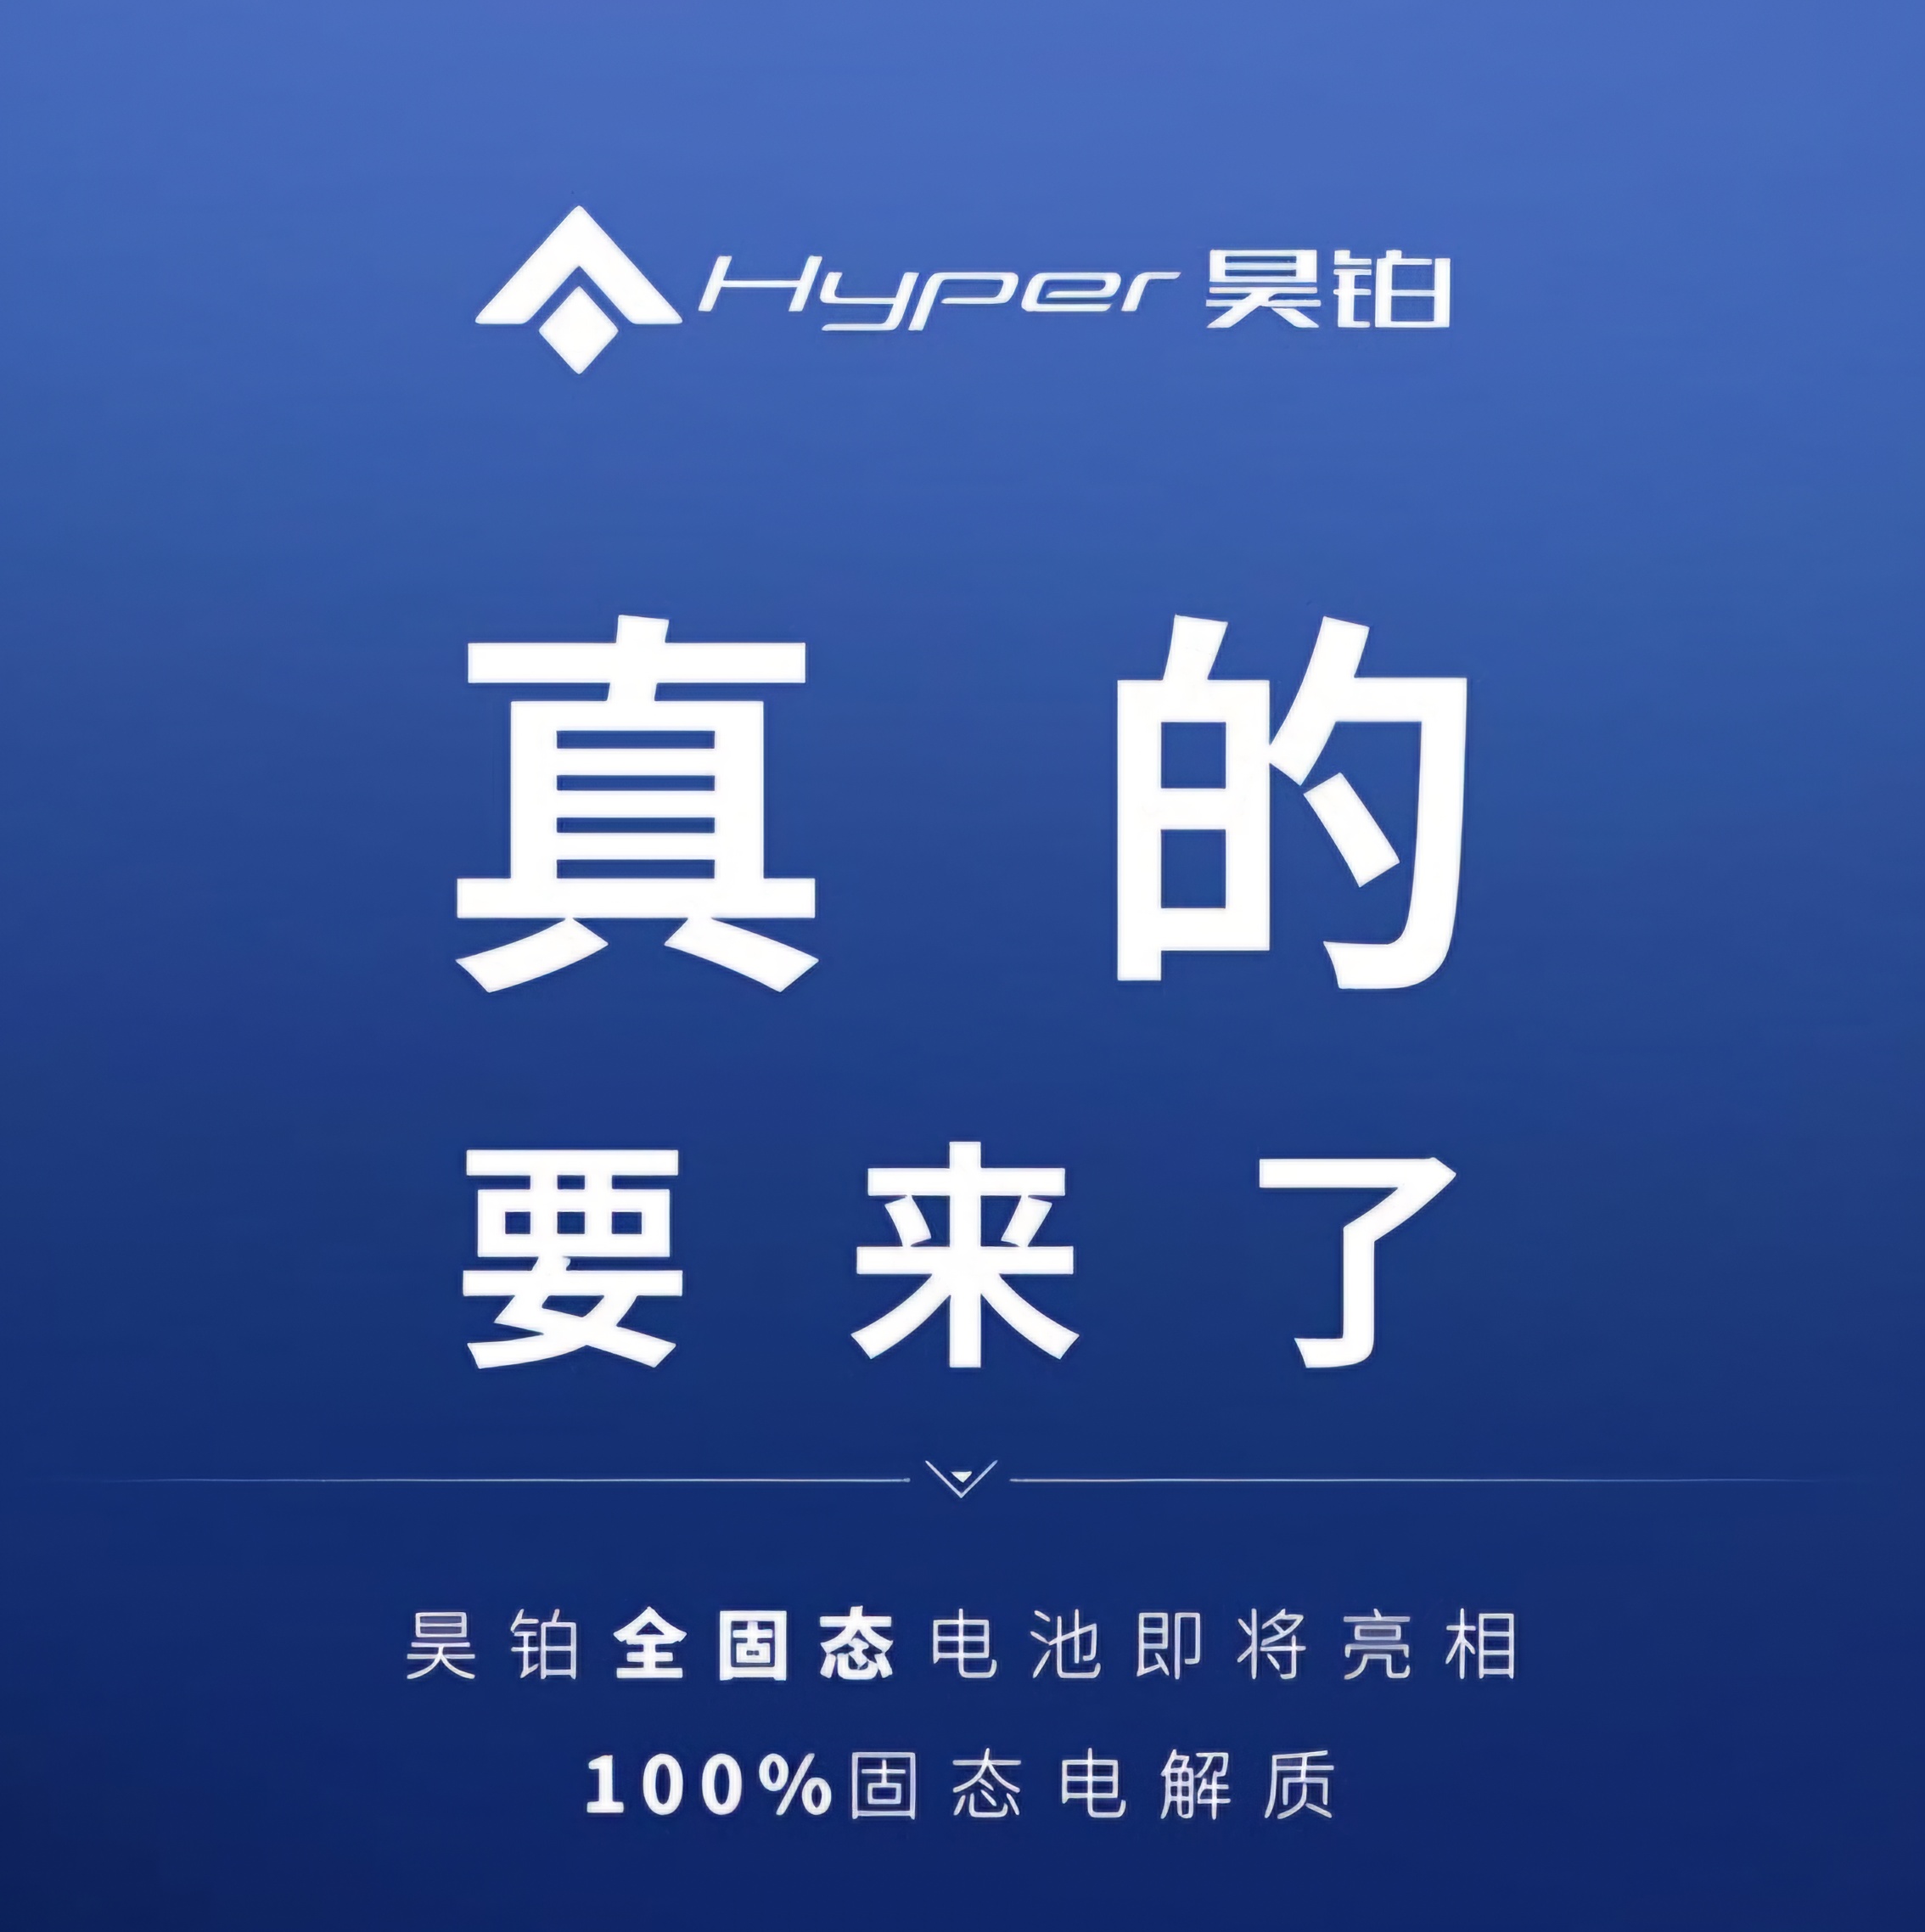 Der chinesische Autohersteller Hyper stellt am Donnerstag eine Festkörperbatterie für Elektrofahrzeuge vor